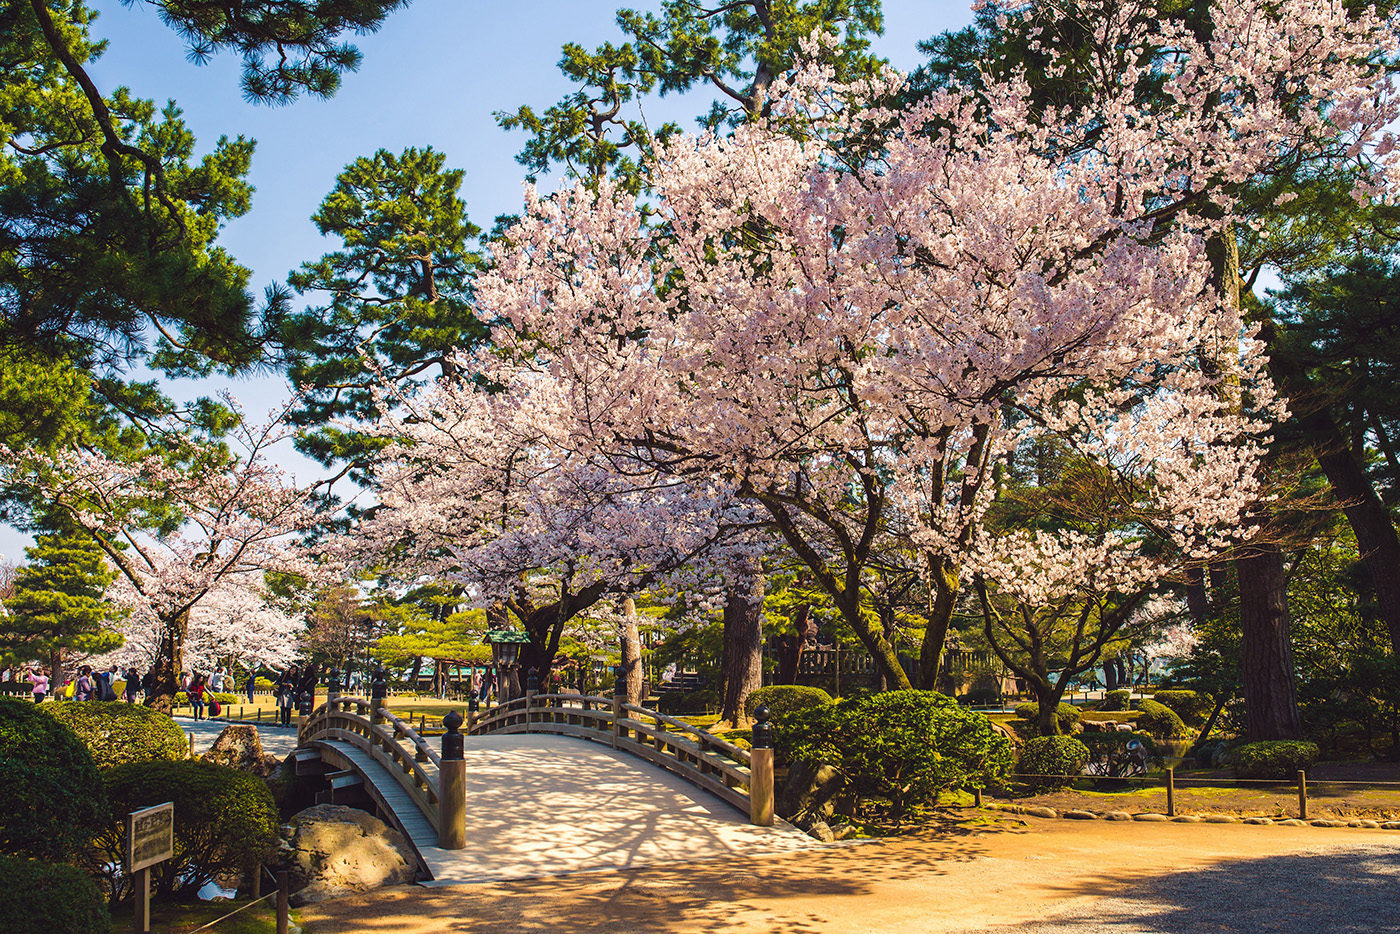 Descubre cerezos en flor, casas de té y longevas arboledas en Kanazawa